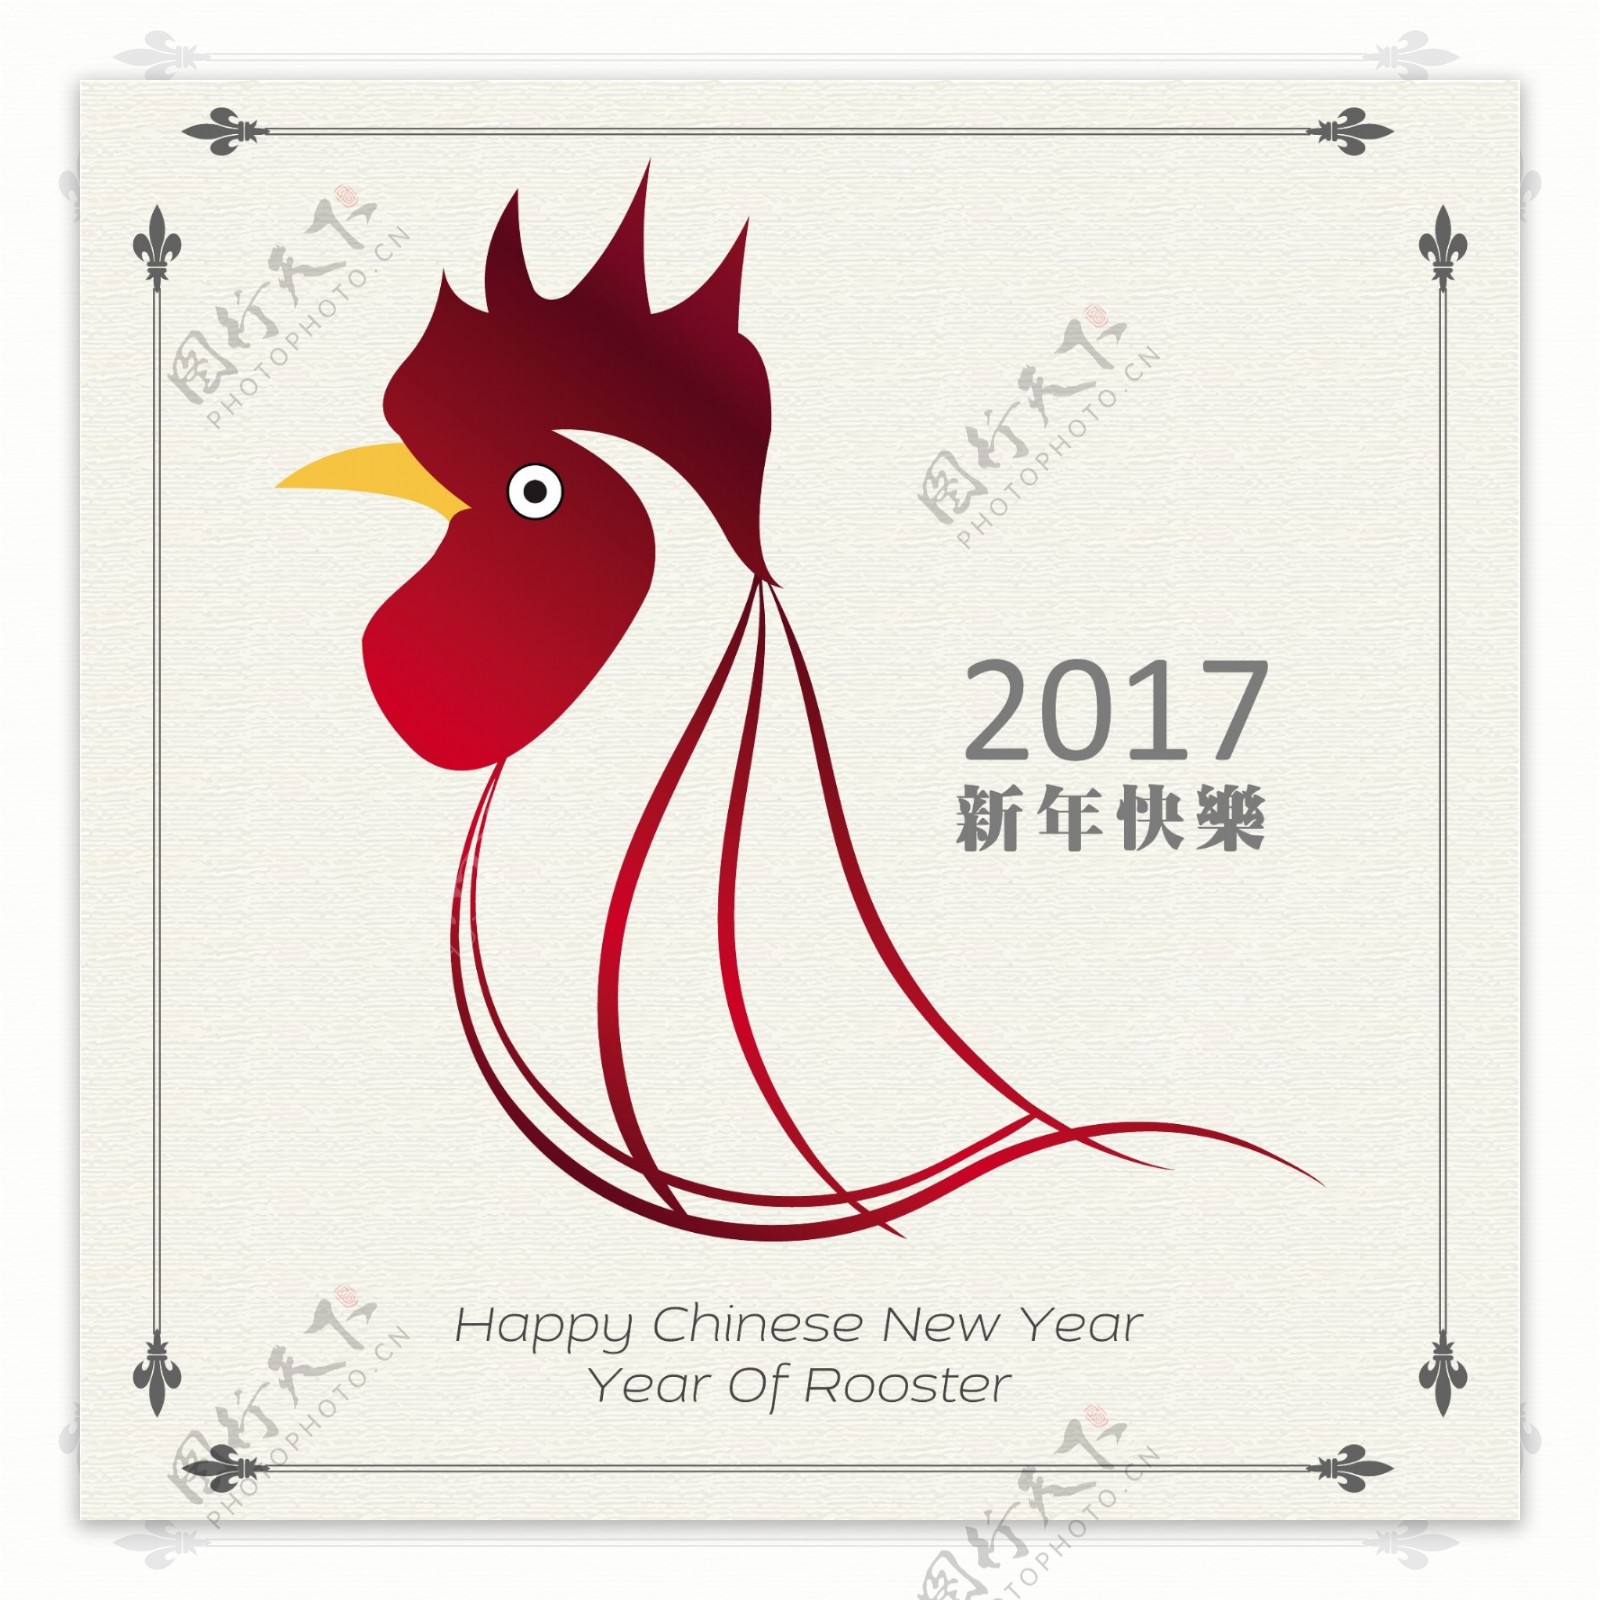 有中国新年鸡的背景